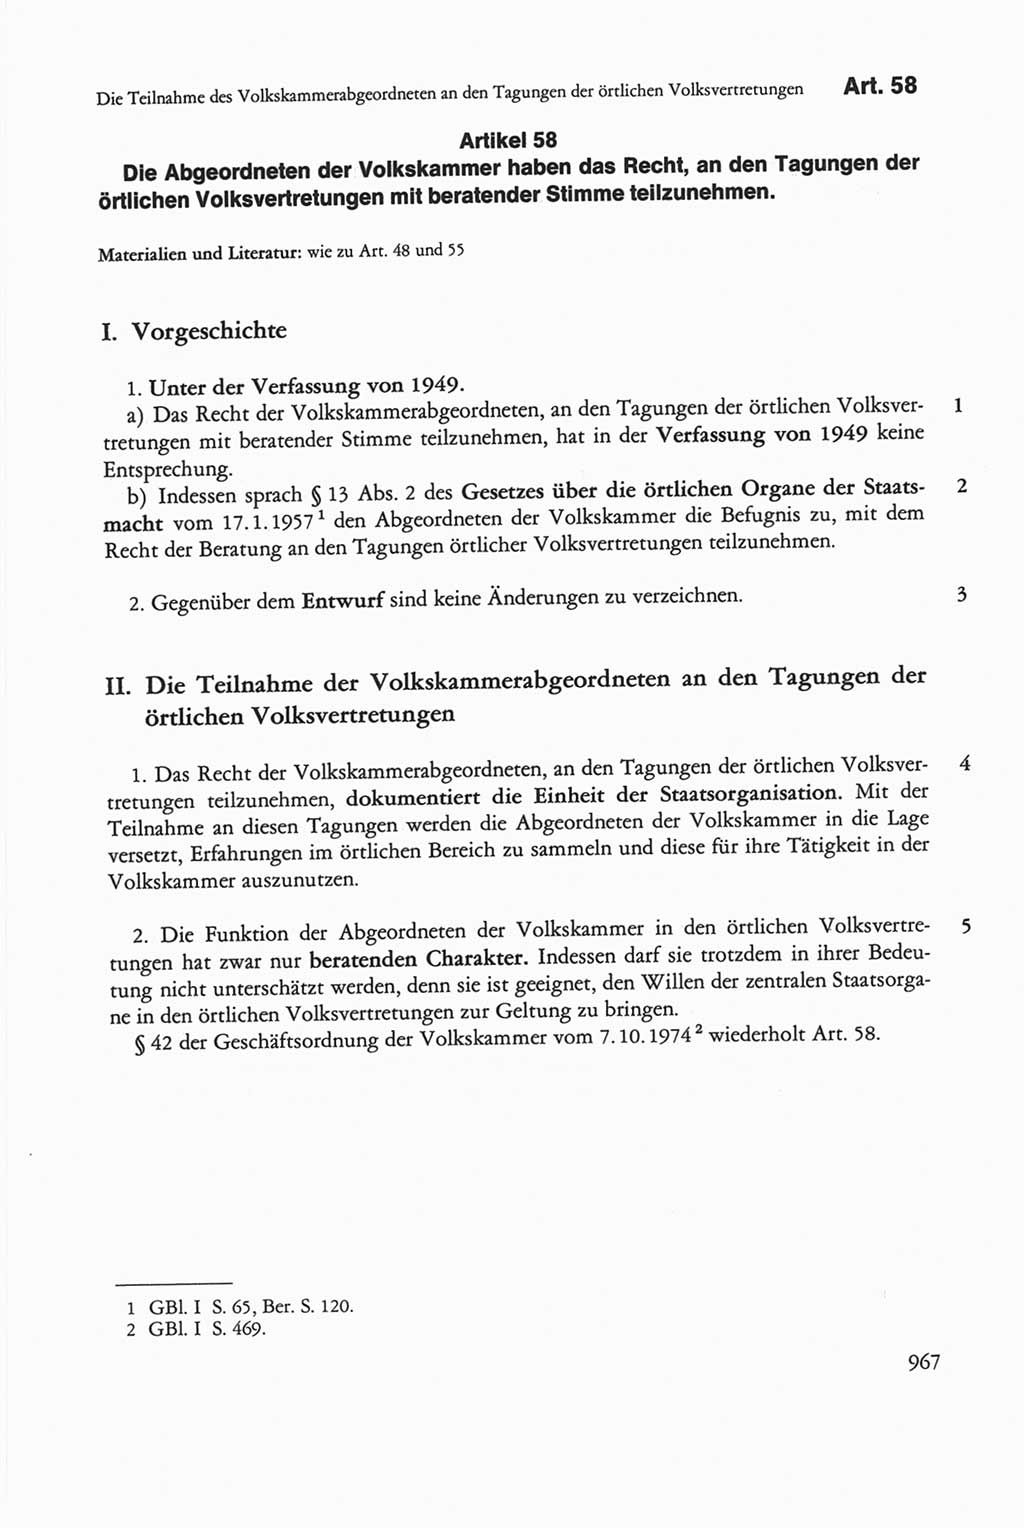 Die sozialistische Verfassung der Deutschen Demokratischen Republik (DDR), Kommentar mit einem Nachtrag 1997, Seite 967 (Soz. Verf. DDR Komm. Nachtr. 1997, S. 967)